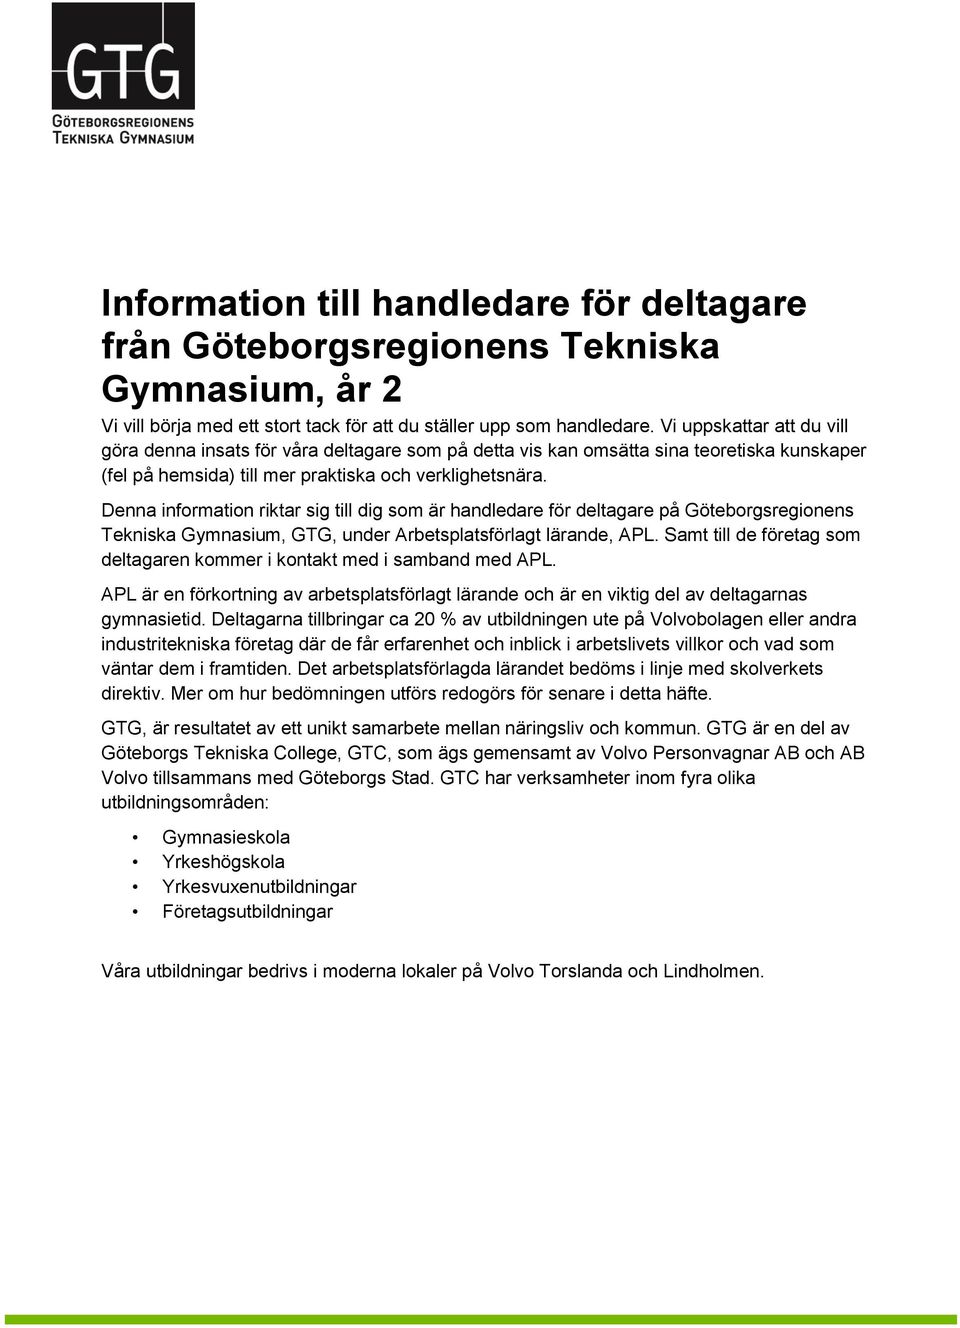 Denna information riktar sig till dig som är handledare för deltagare på Göteborgsregionens Tekniska Gymnasium, GTG, under Arbetsplatsförlagt lärande, APL.